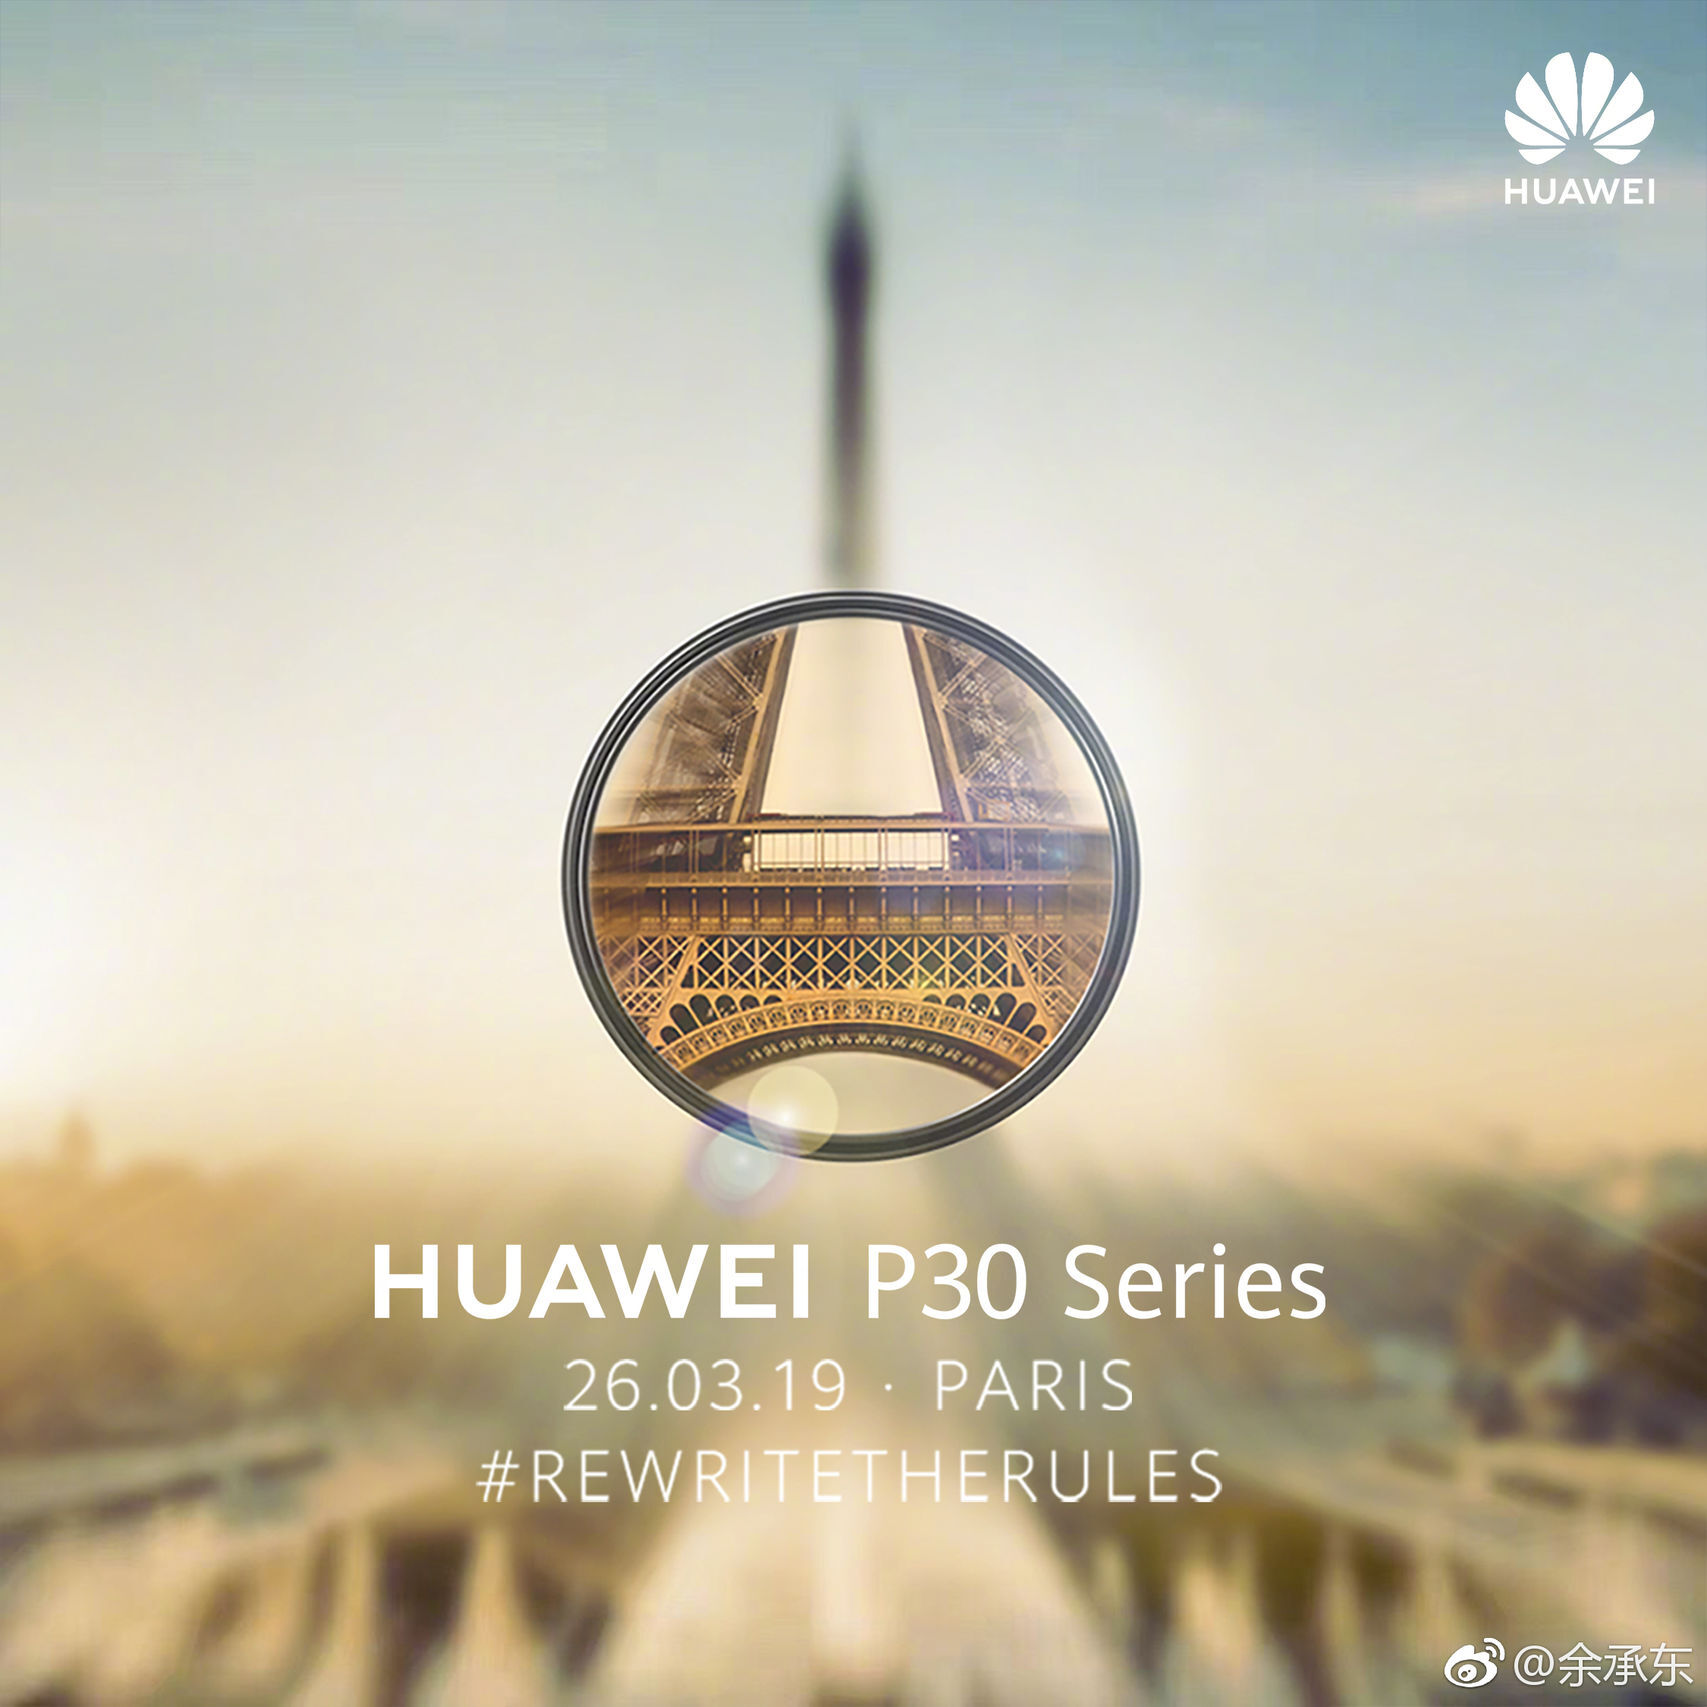 Huawei P30 RewriteTheRules